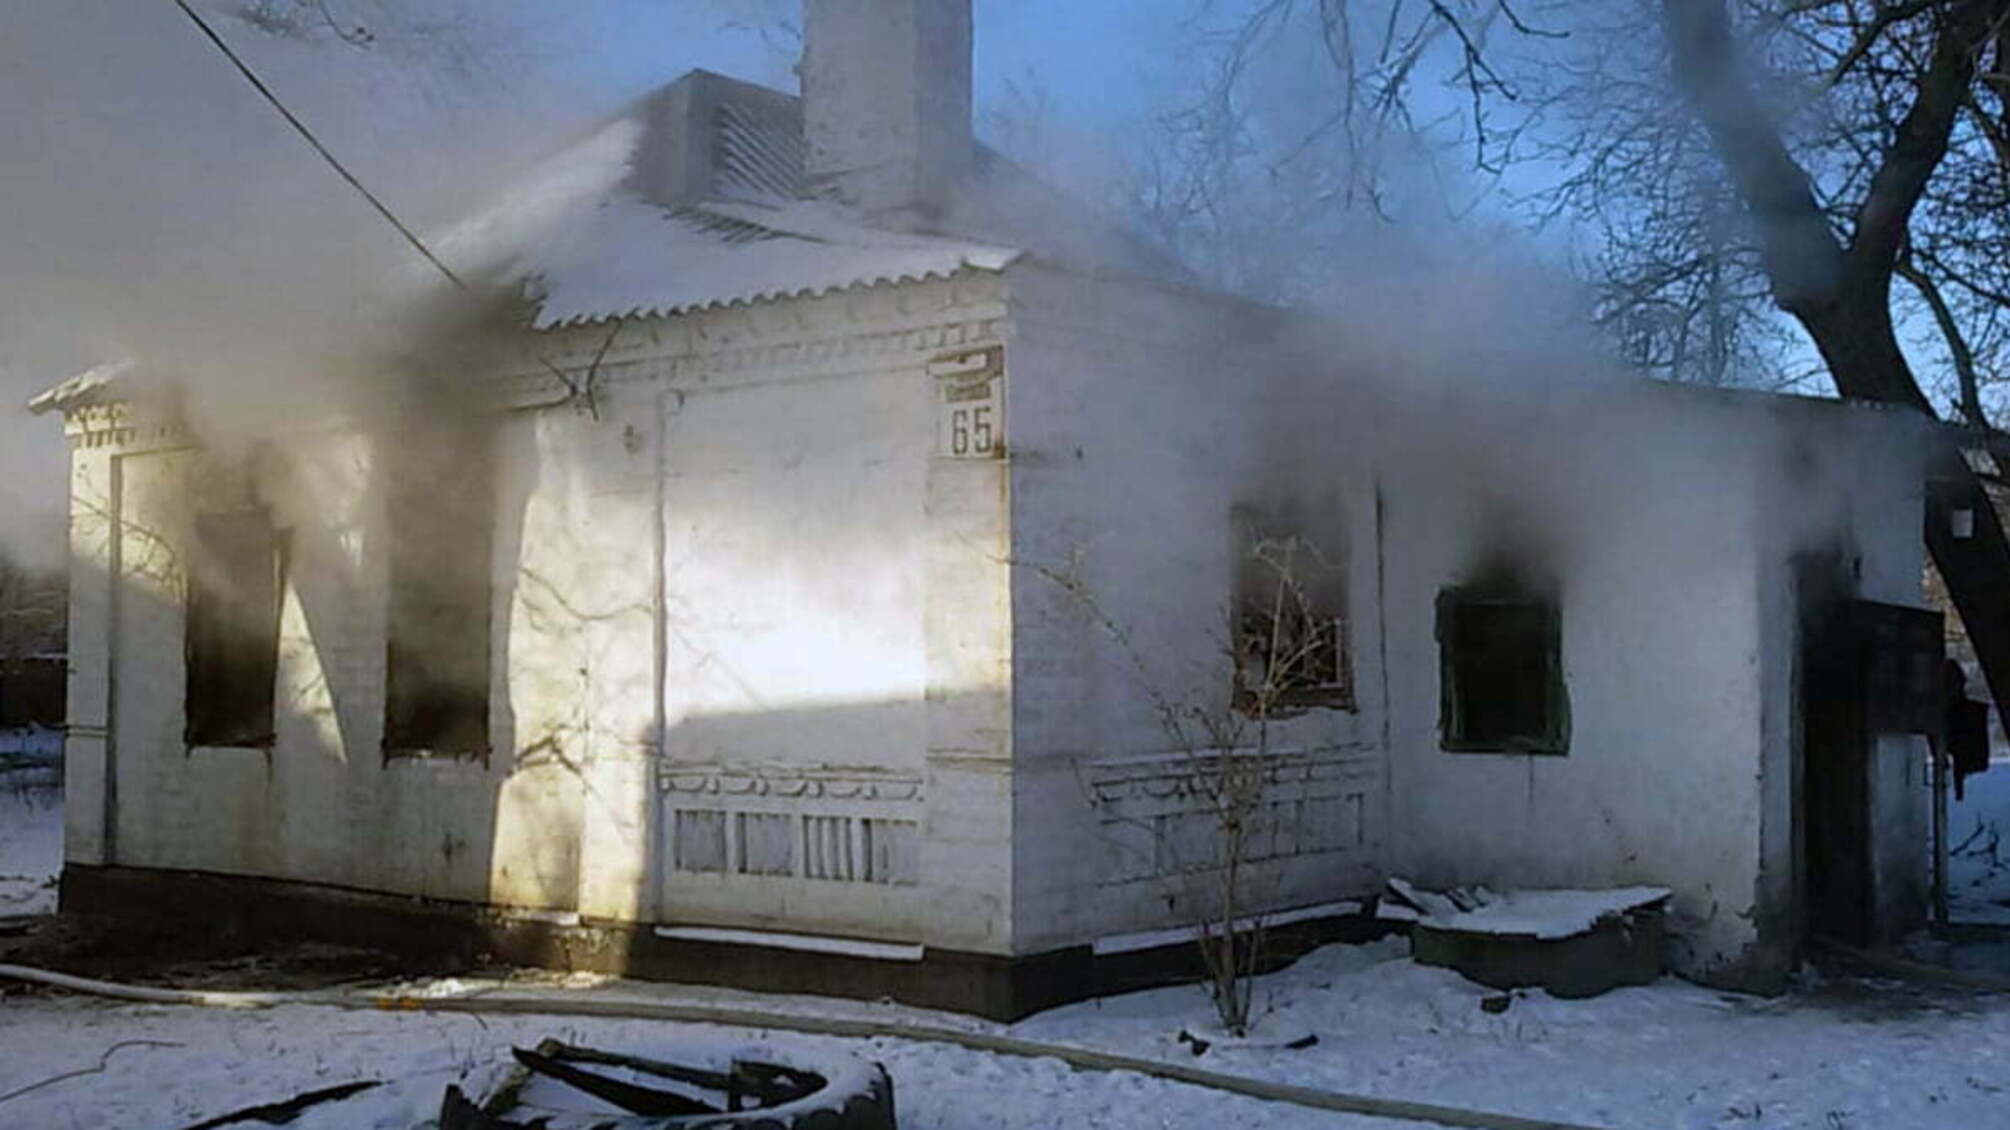 Дніпропетровська область: під час пожежі загинула 1 особа